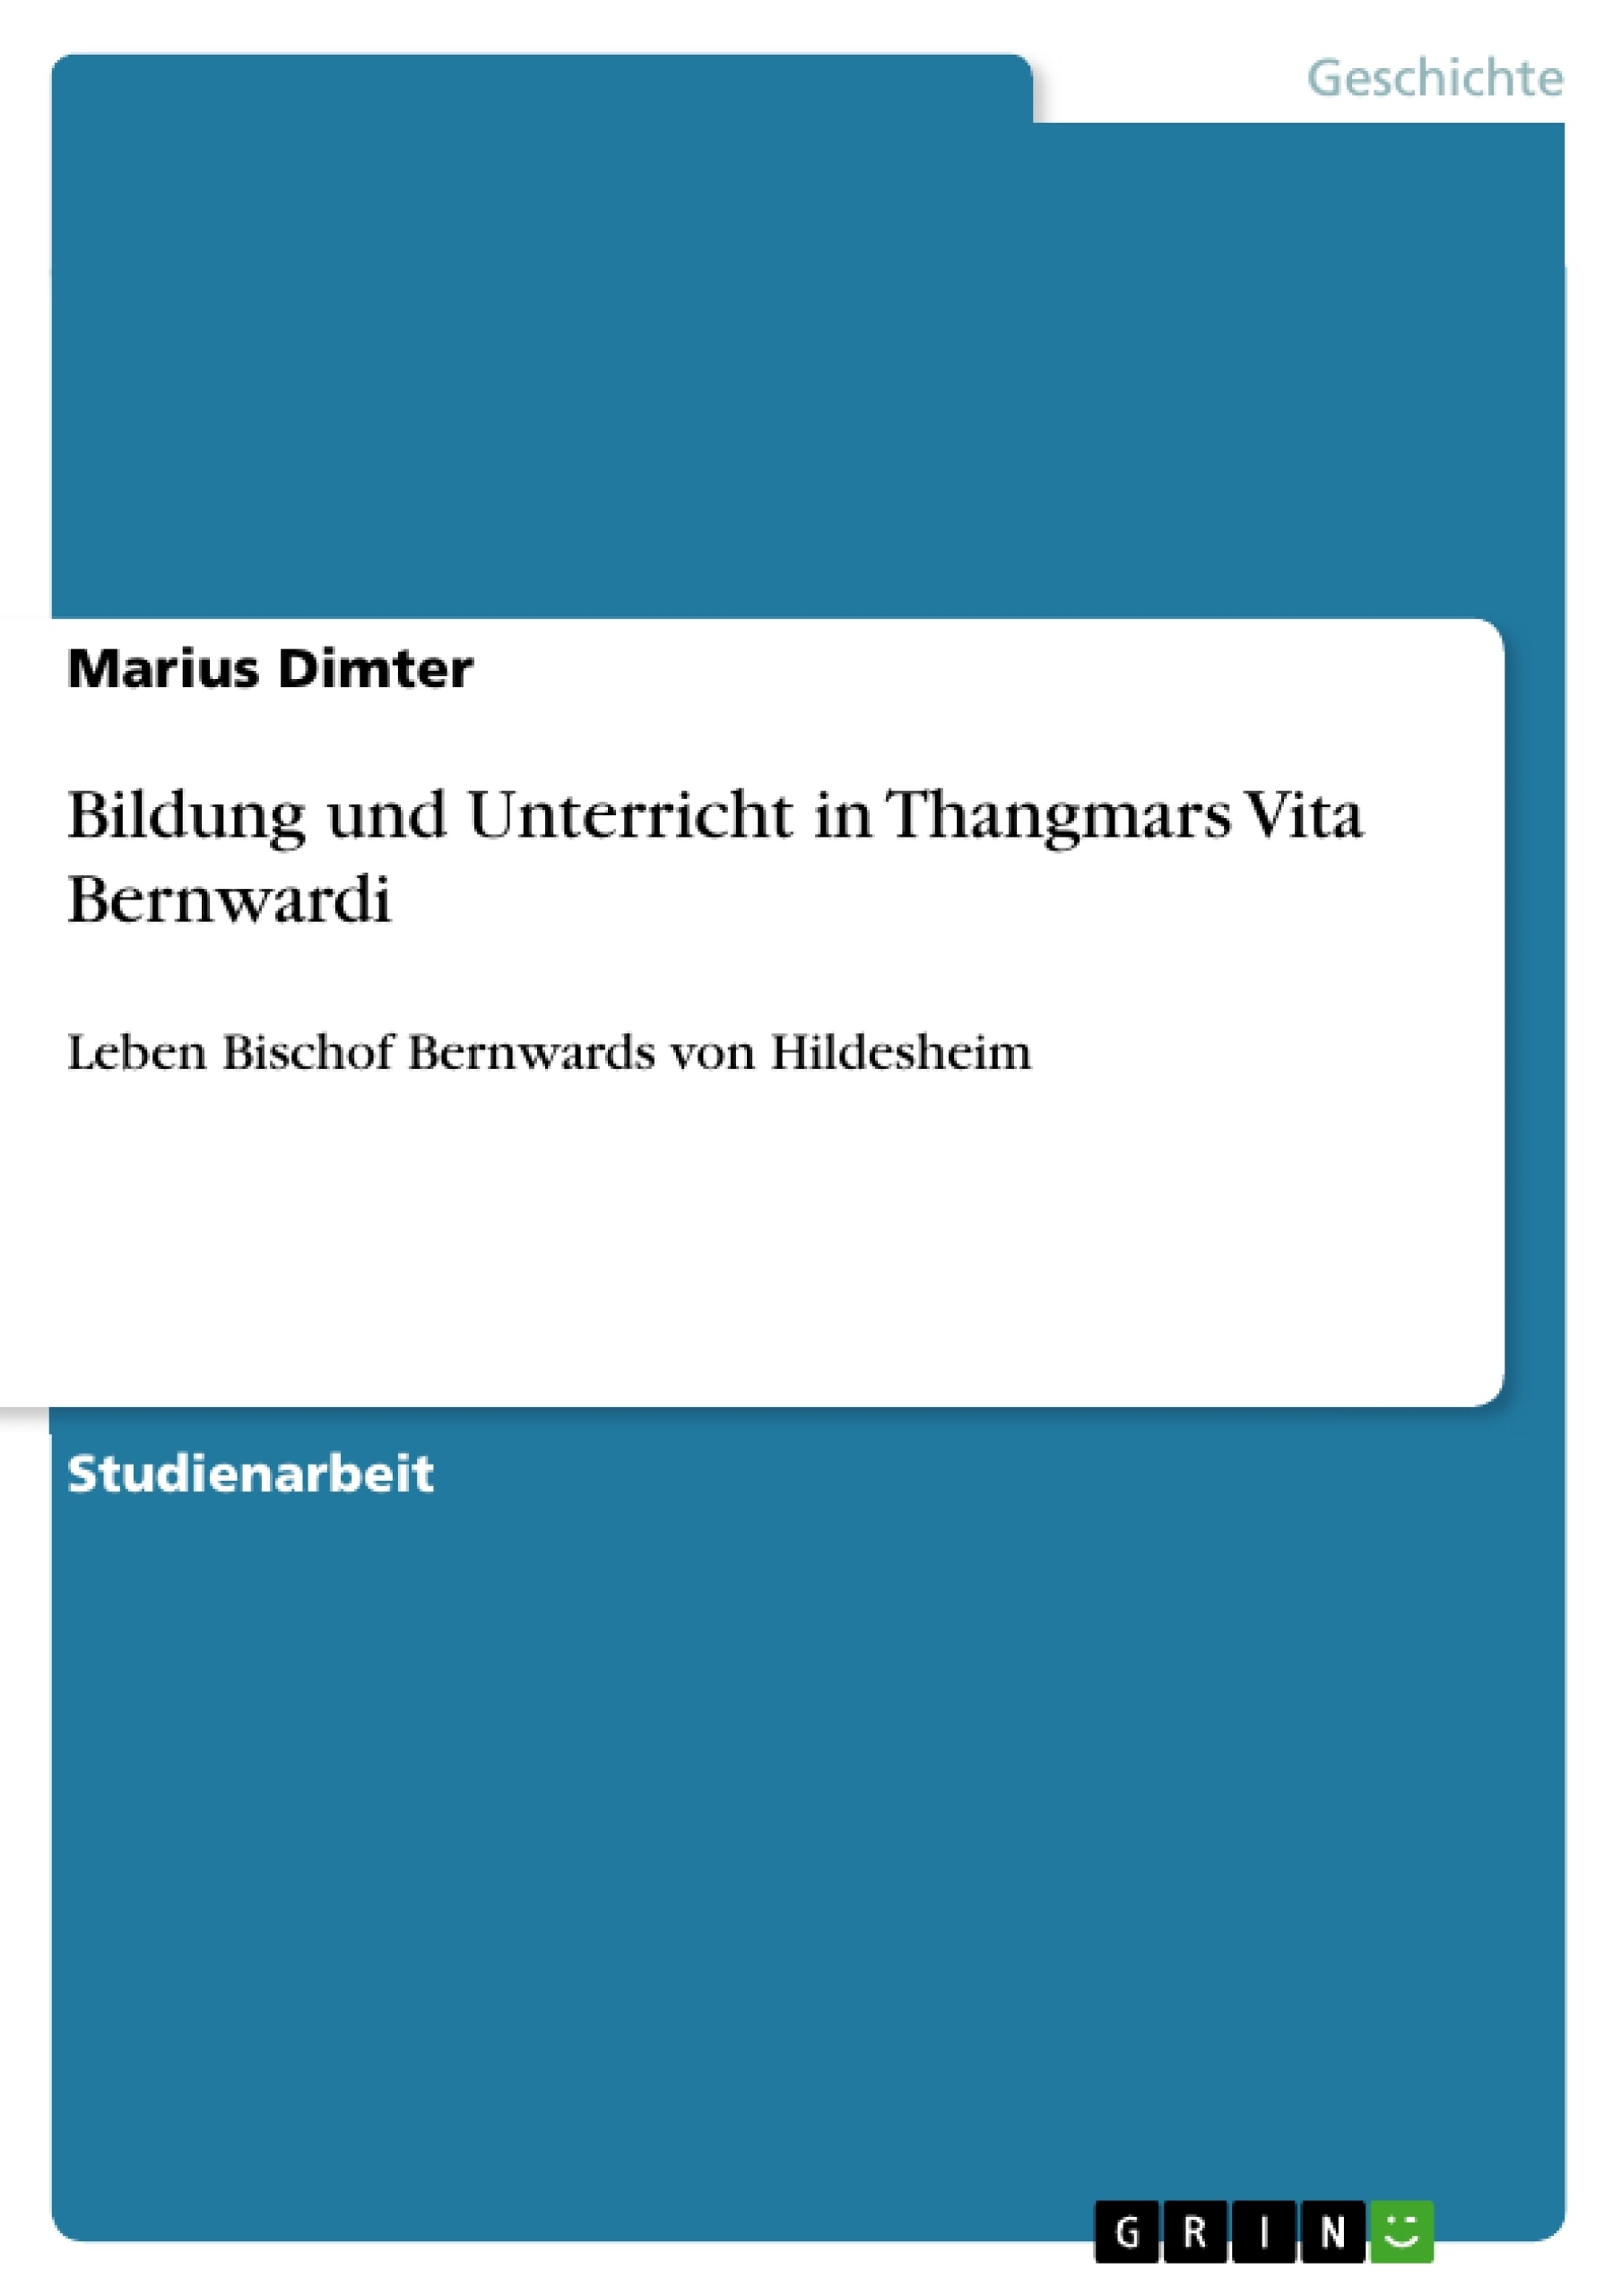 Titre: Bildung und Unterricht in Thangmars Vita Bernwardi